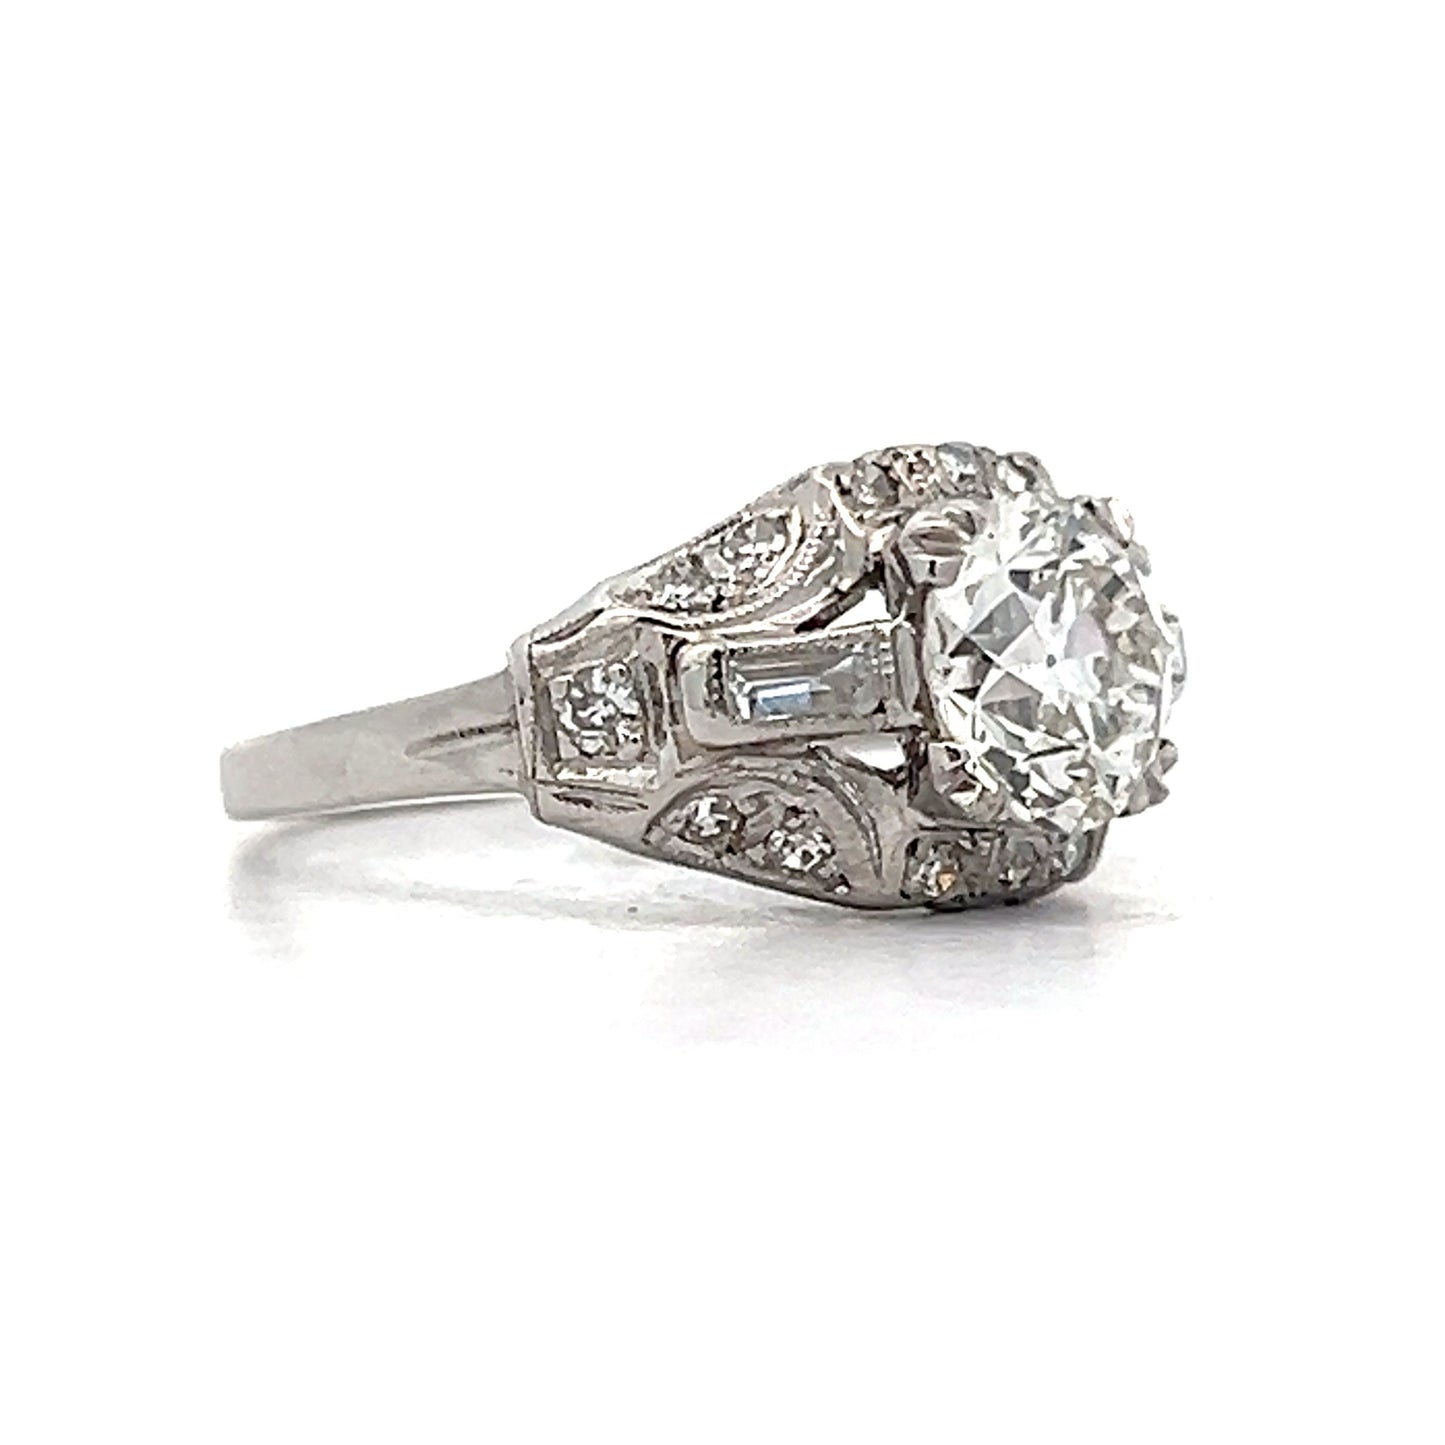 1.24 Vintage Deco Diamond Engagement Ring in Platinum